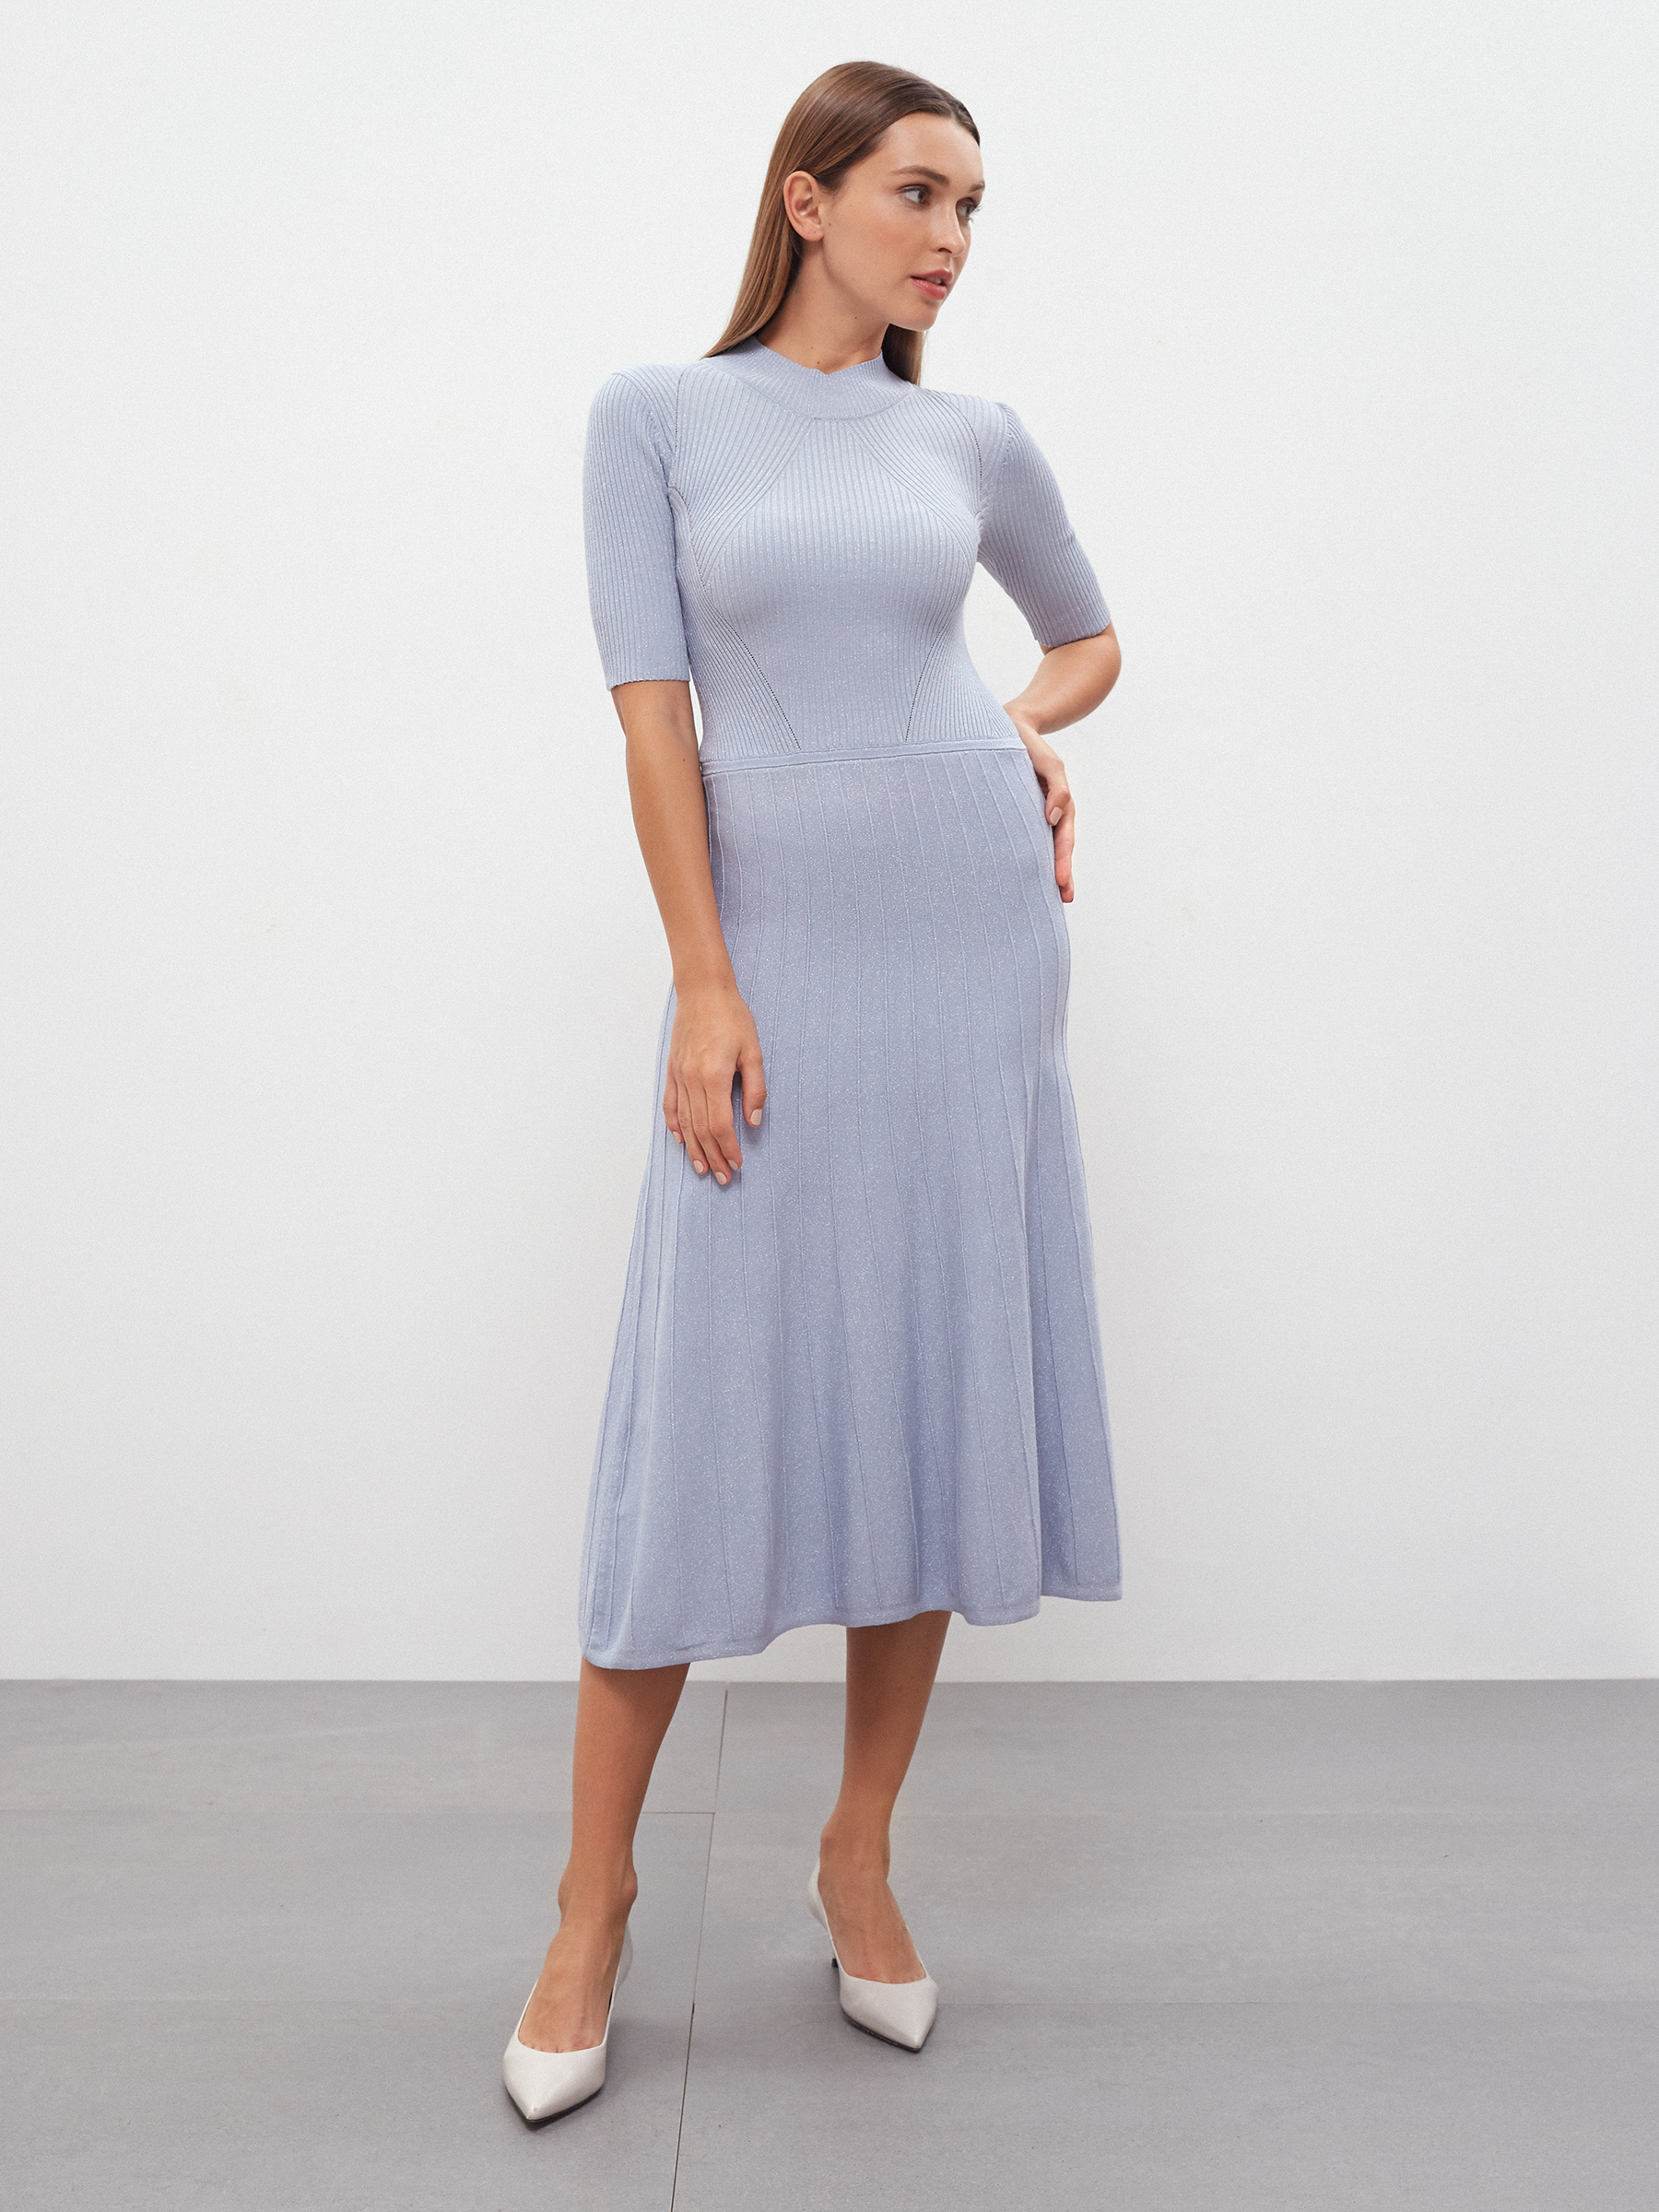 Платье женское Consowear KDM 220656 голубое 44 RU